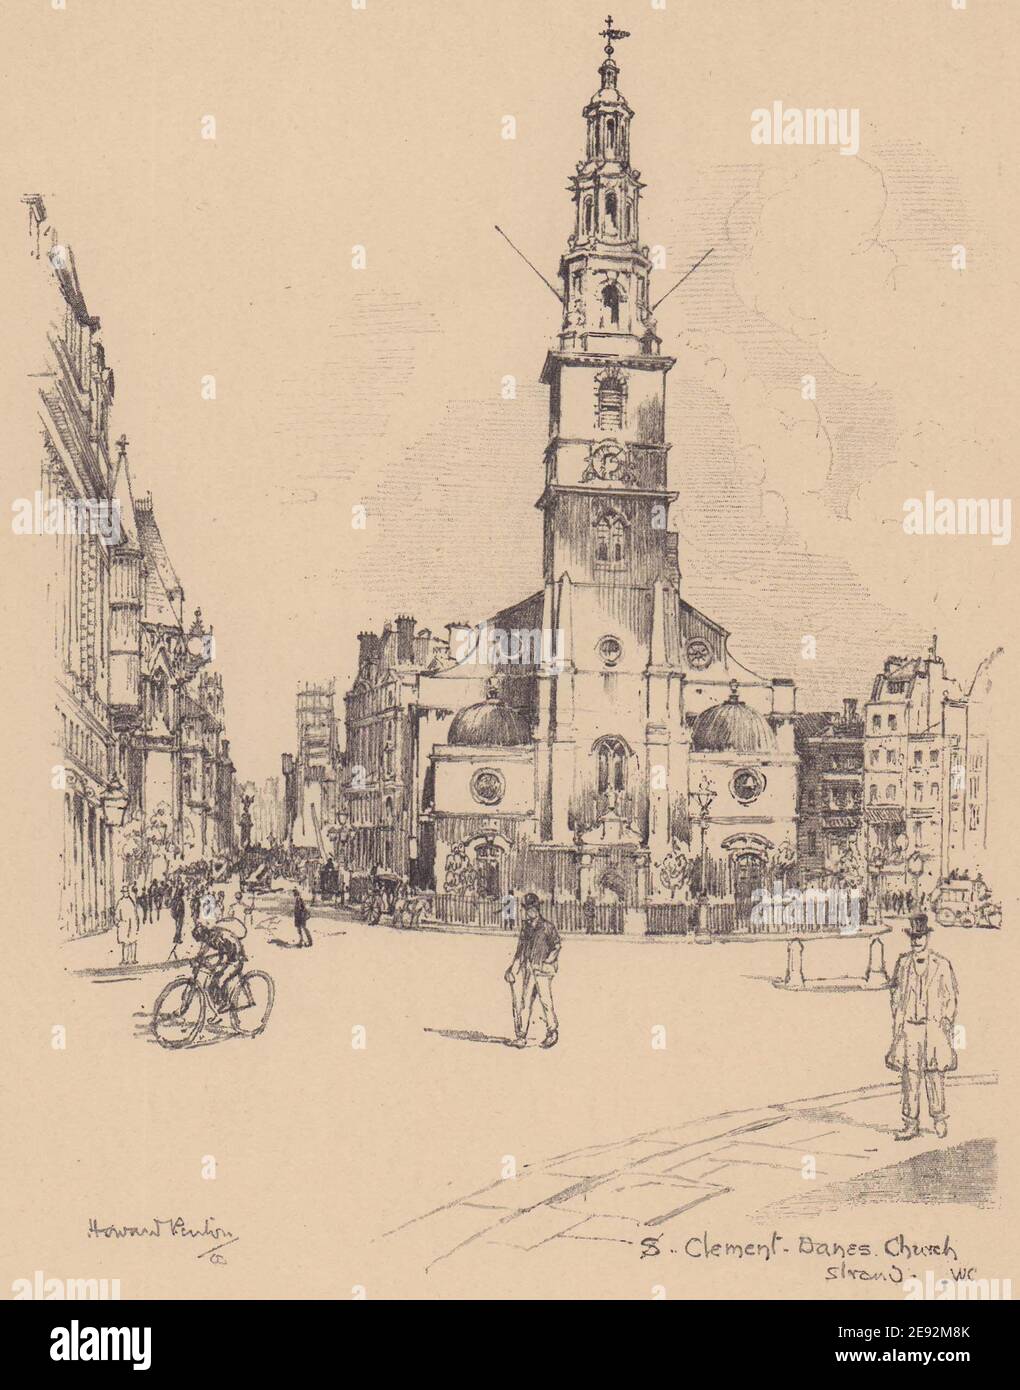 Église Saint-Clément-Danes, Strand, Westminster 1904 ancienne image imprimée Banque D'Images